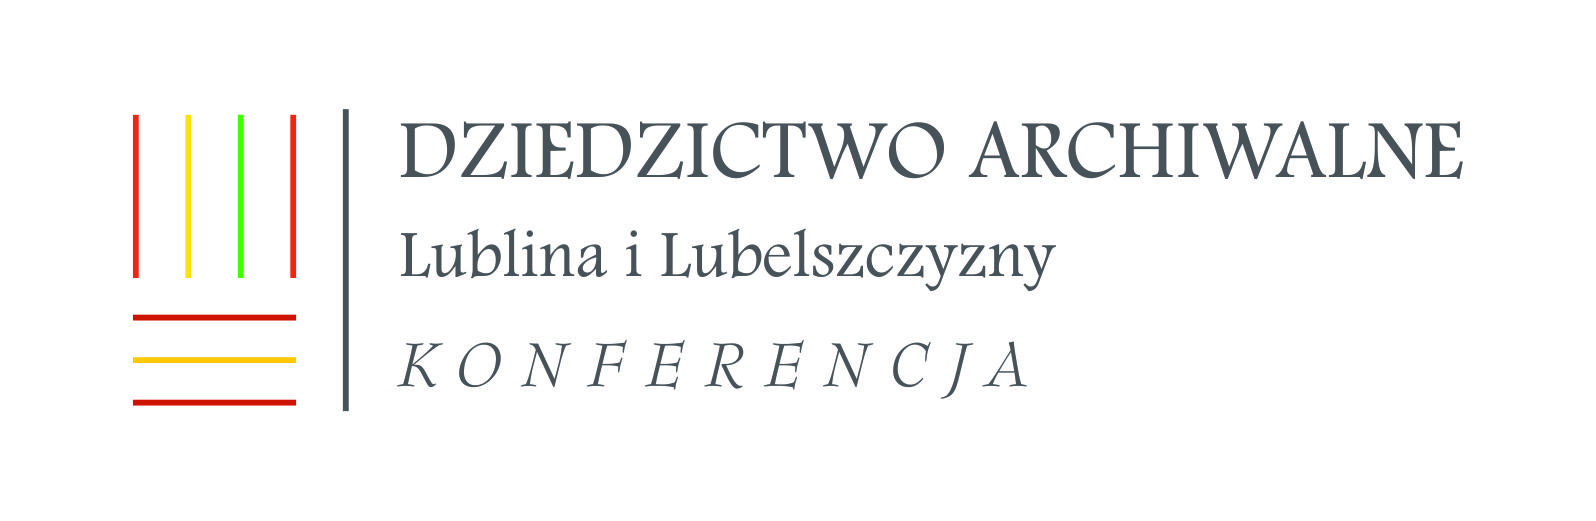 Konferencja ,,Dziedzictwo archiwalne Lublina i Lubelszczyzny. Ludzie, instytucje, dokumentacja”